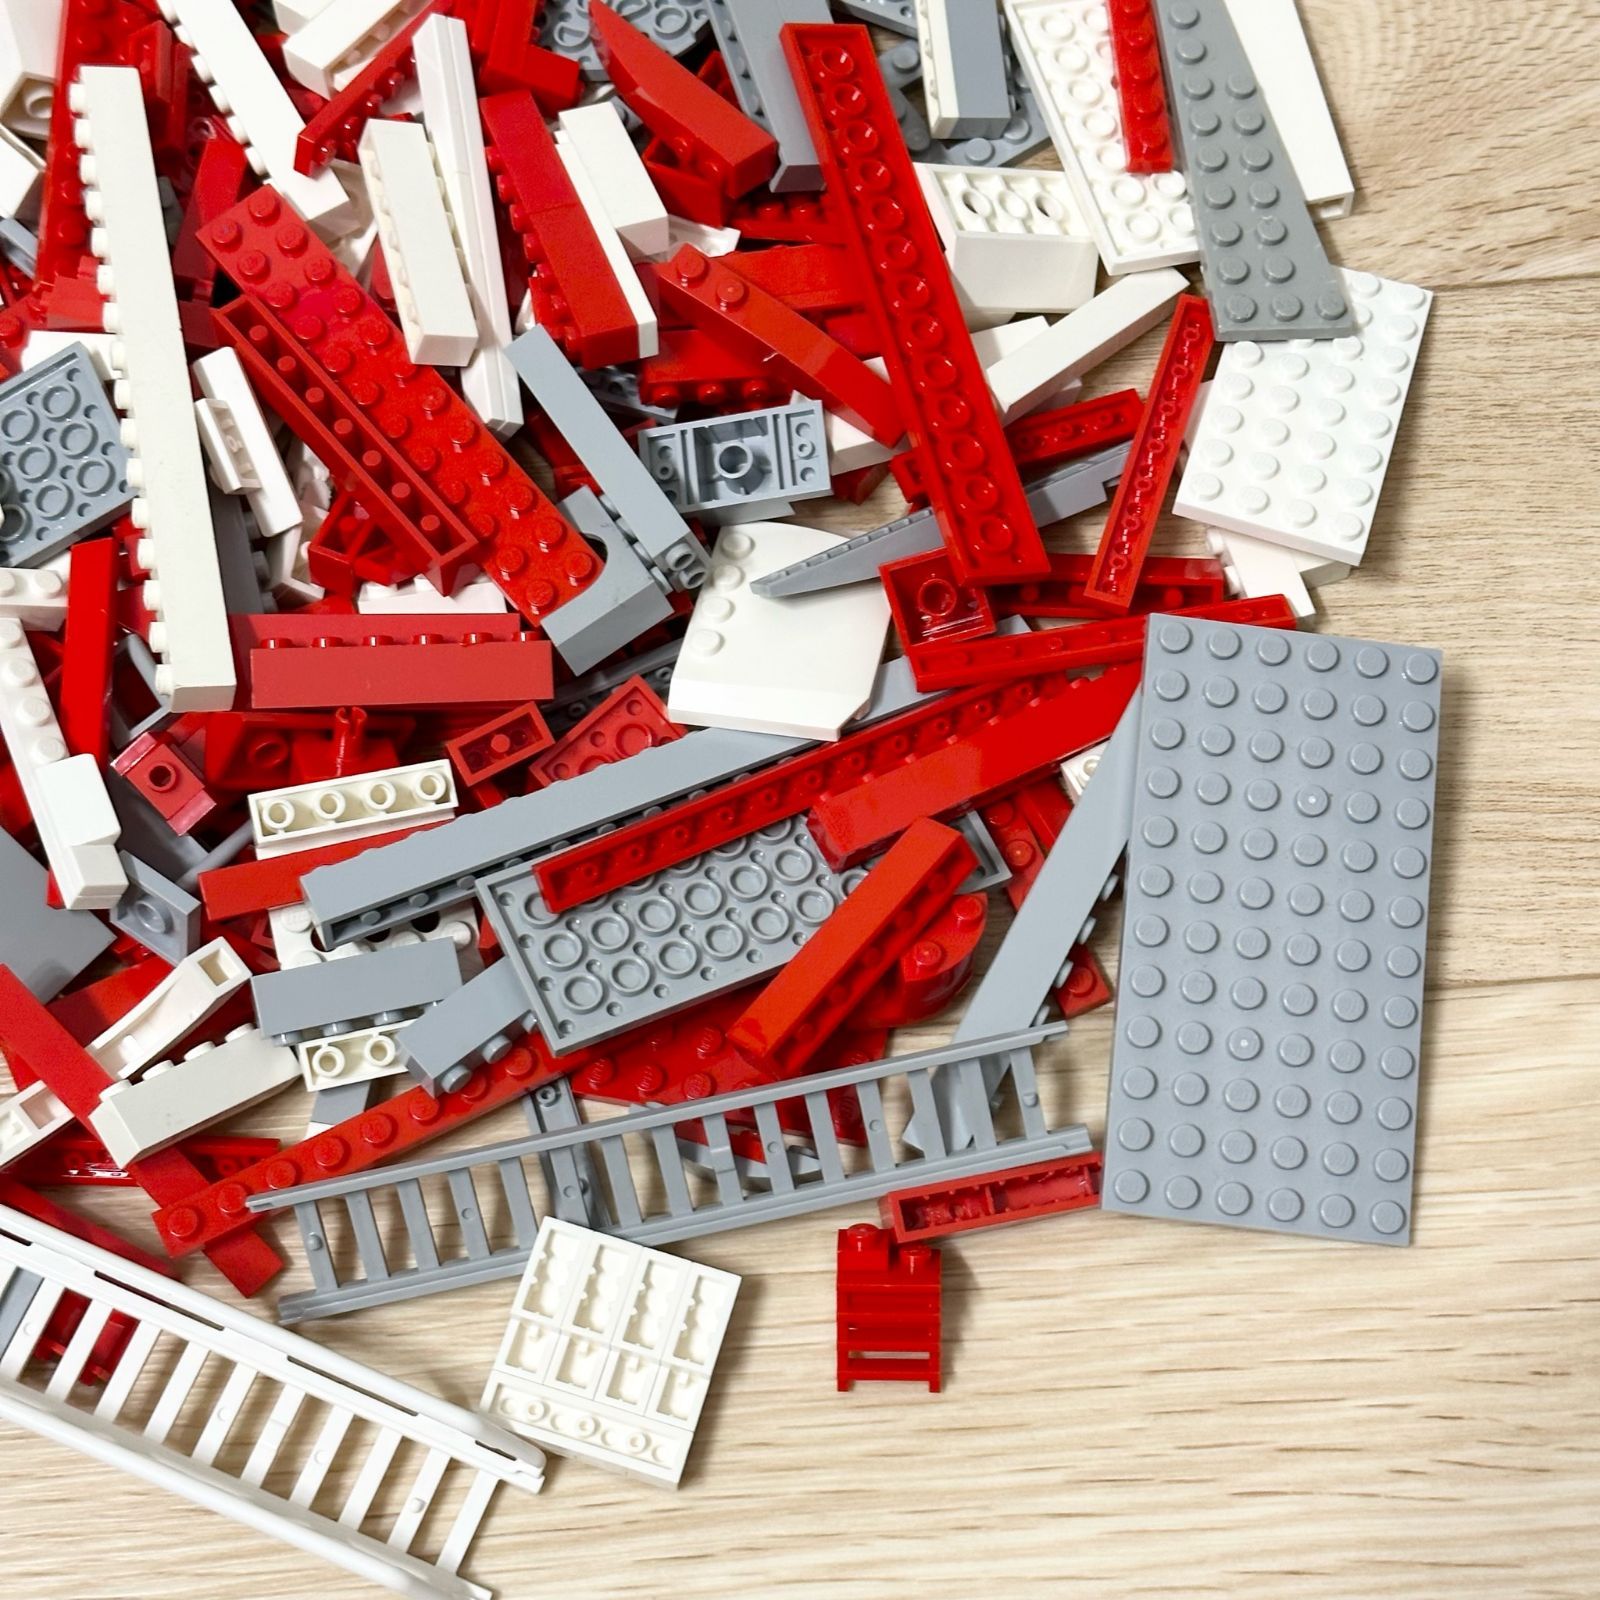 LEGO レゴ レッド ホワイト グレー系 中古 パーツ ブロック プレート 